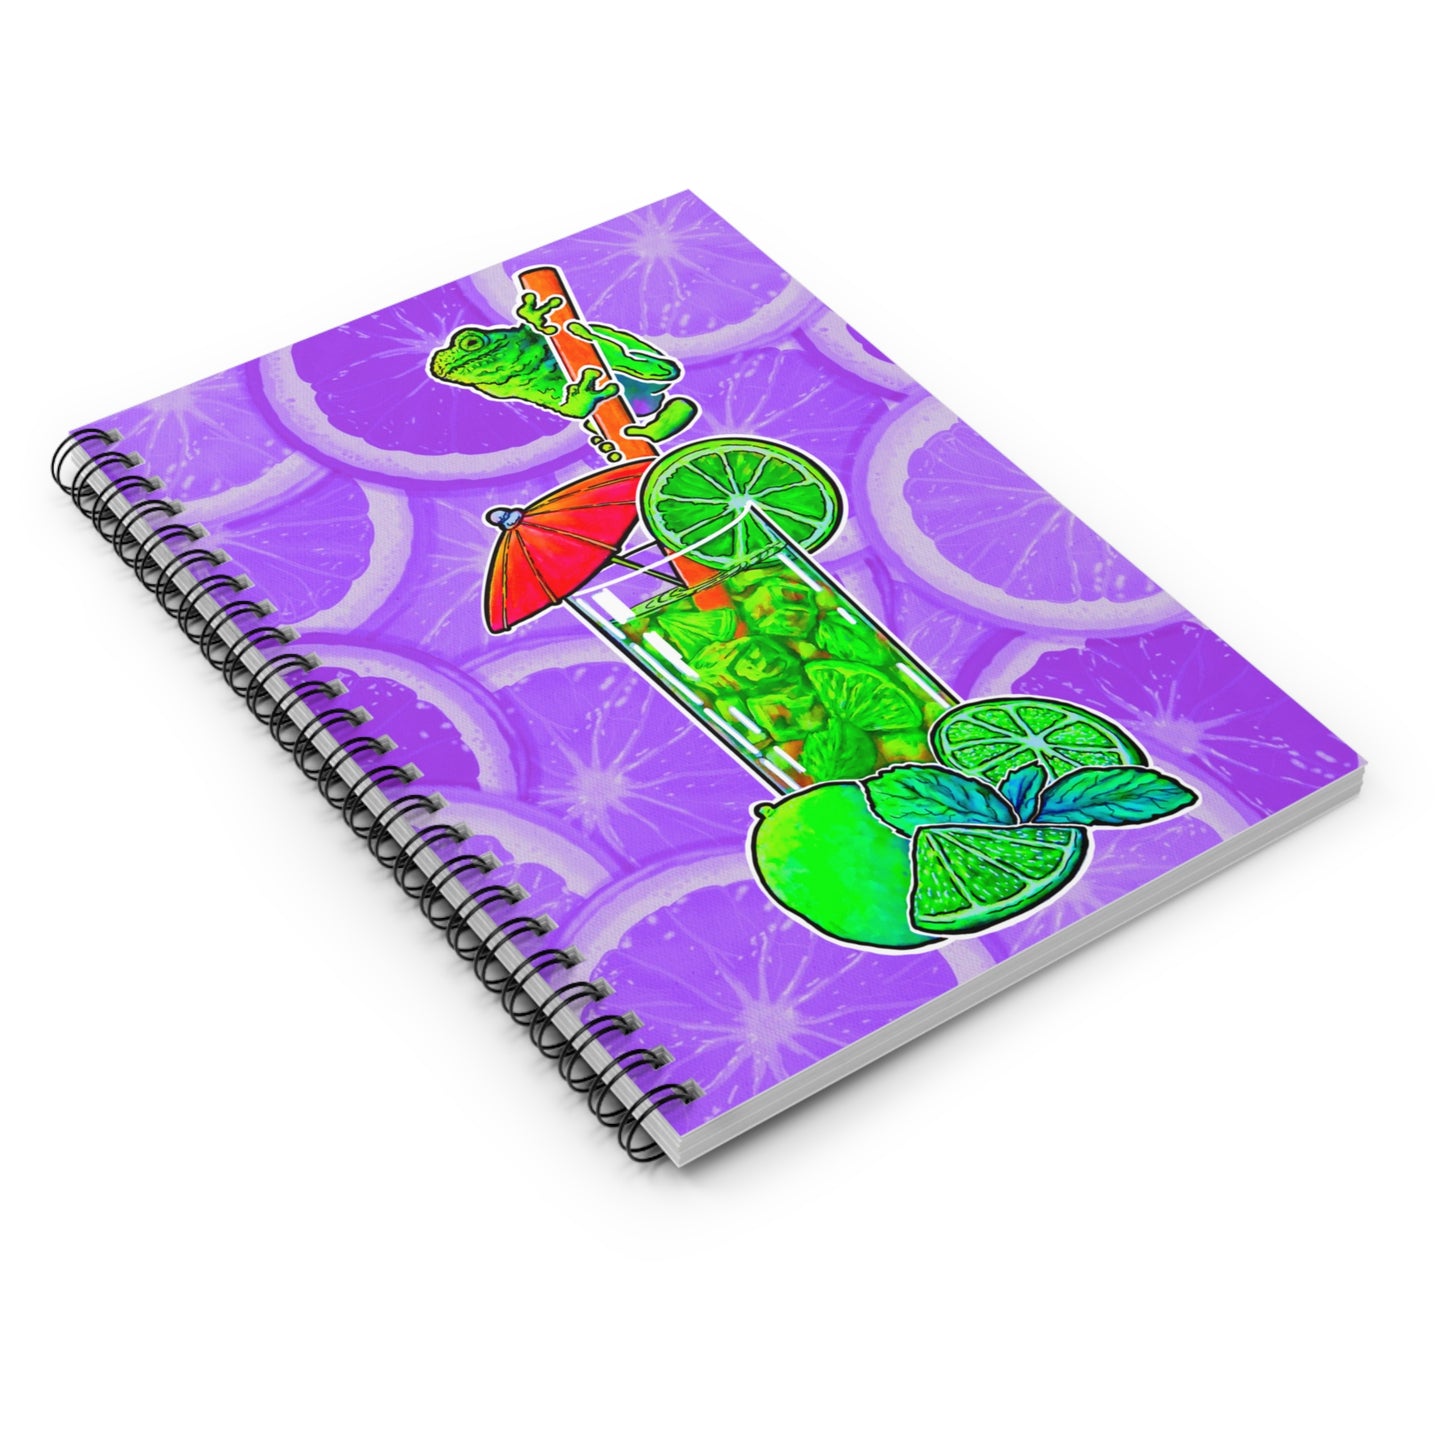 Spiral Notebook - Ruled Line - C.V. Designs